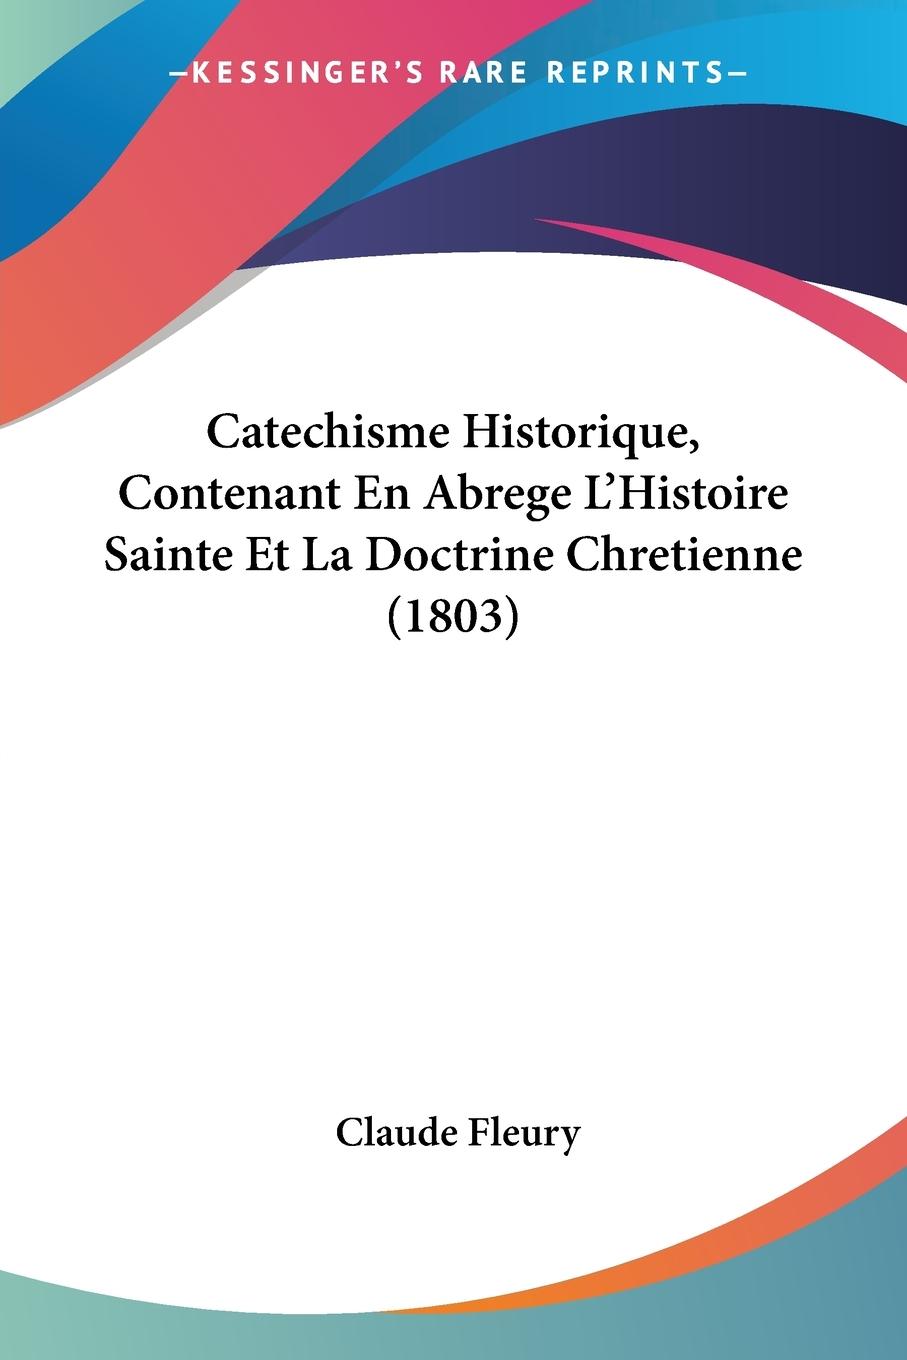 Catechisme Historique, Contenant En Abrege L Histoire Sainte Et La Doctrine Chretienne (1803) - Fleury, Claude